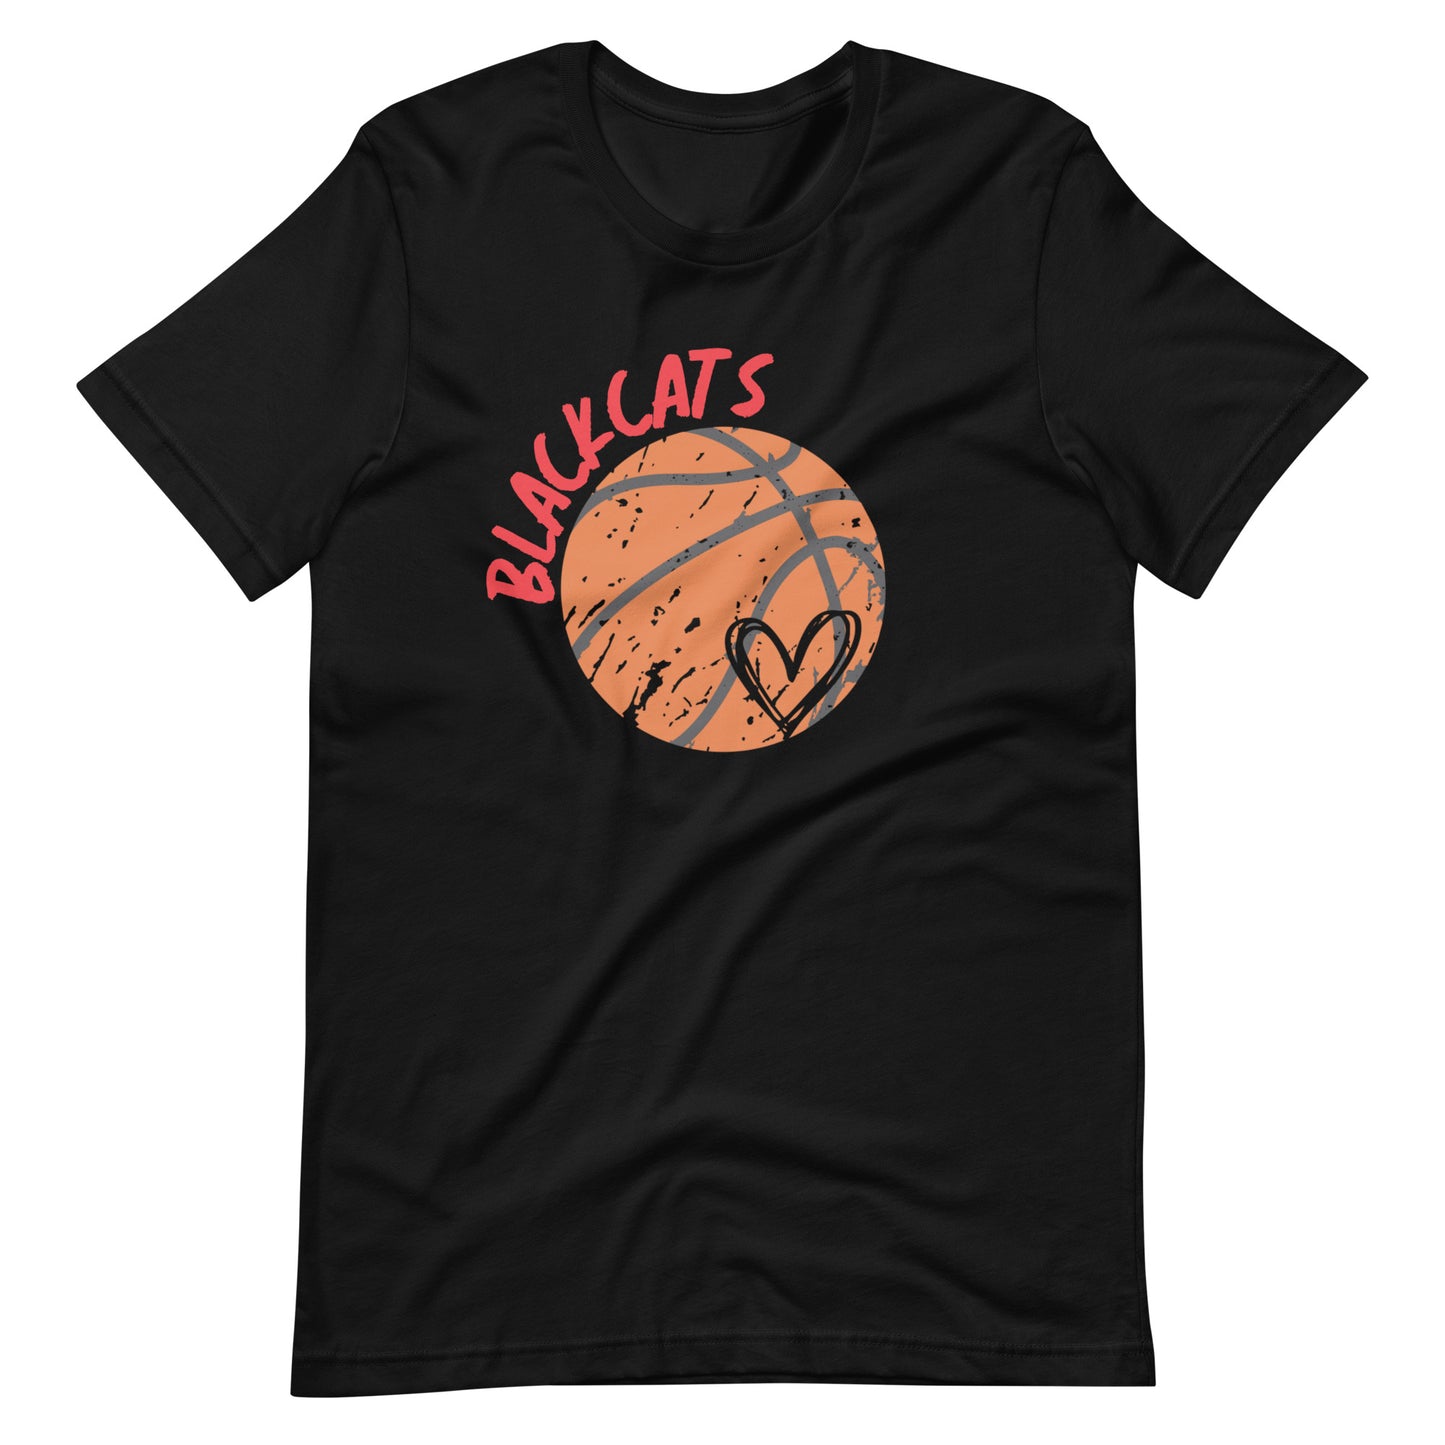 Blackcats Basketball - Adult Tee